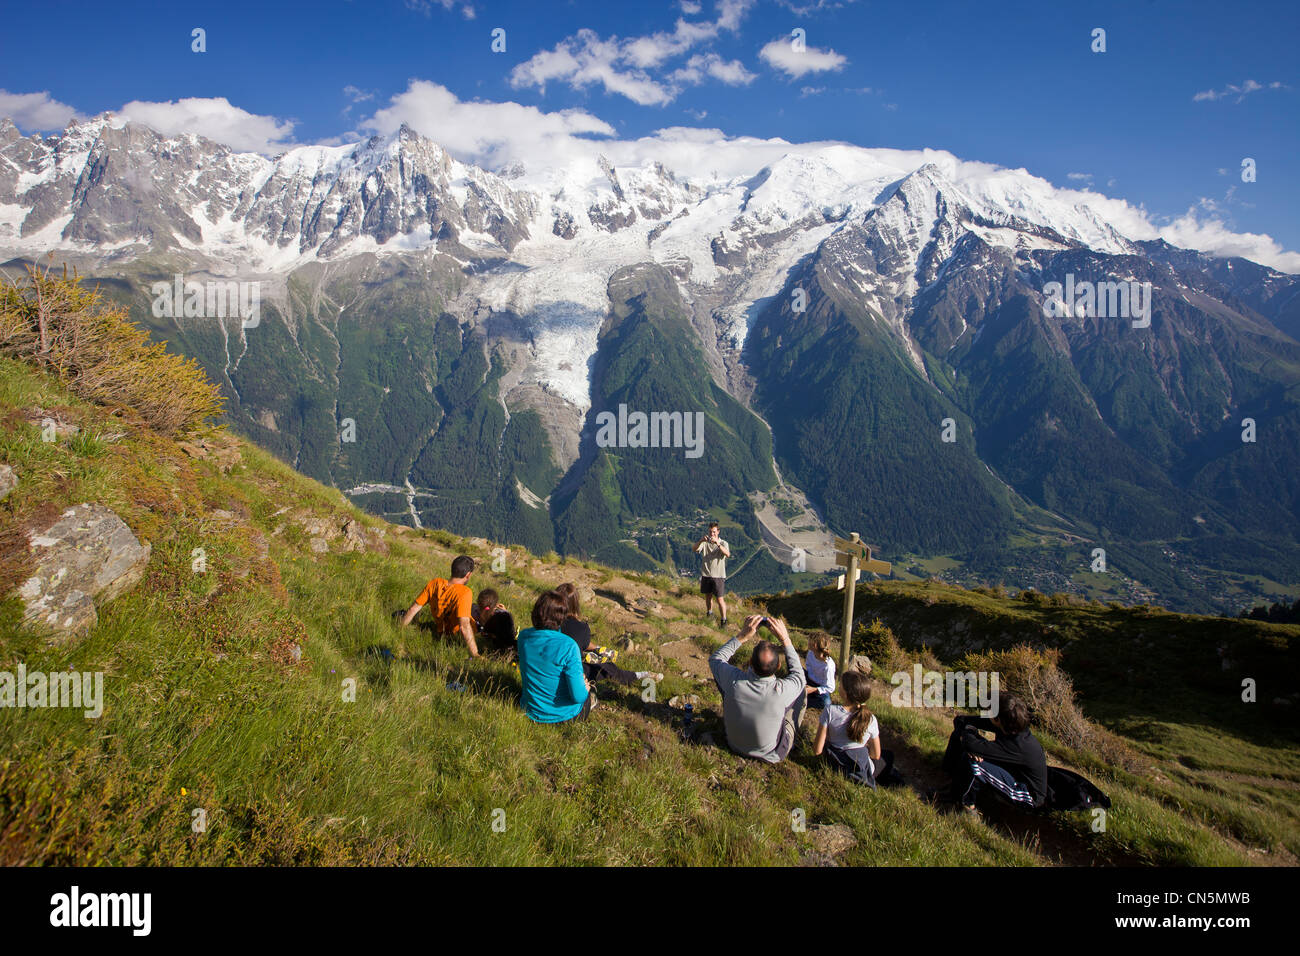 Francia, Haute Savoie, Chamonix Mont Blanc, panorama dal bel rifugio Lachat (2276m) sul massiccio del Monte Bianco e il Mont Blanc Foto Stock